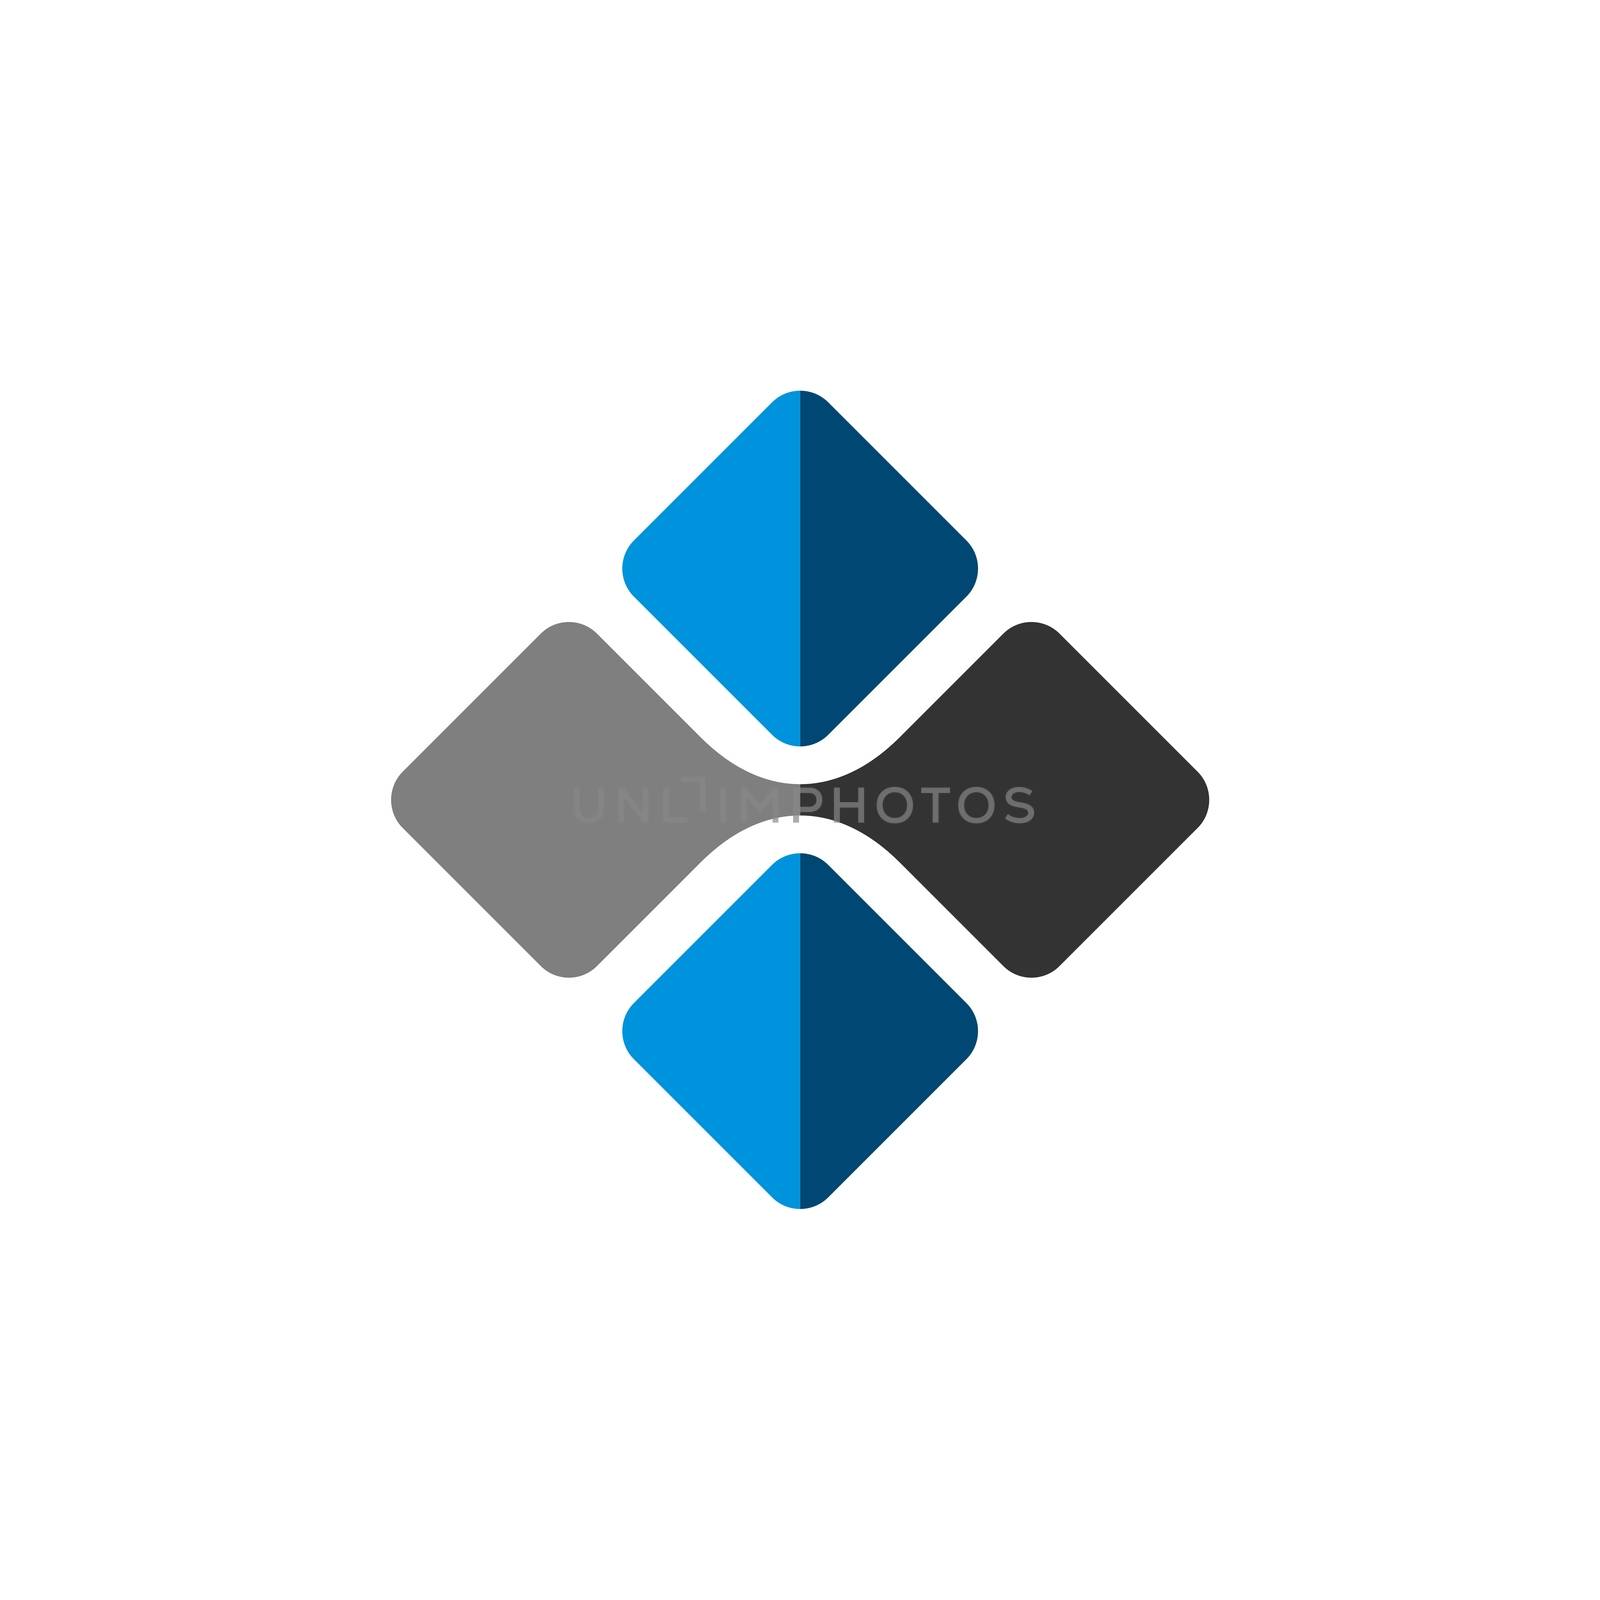 Blue / Grey Square Tile Logo Template Illustration Design. Vector EPS 10.